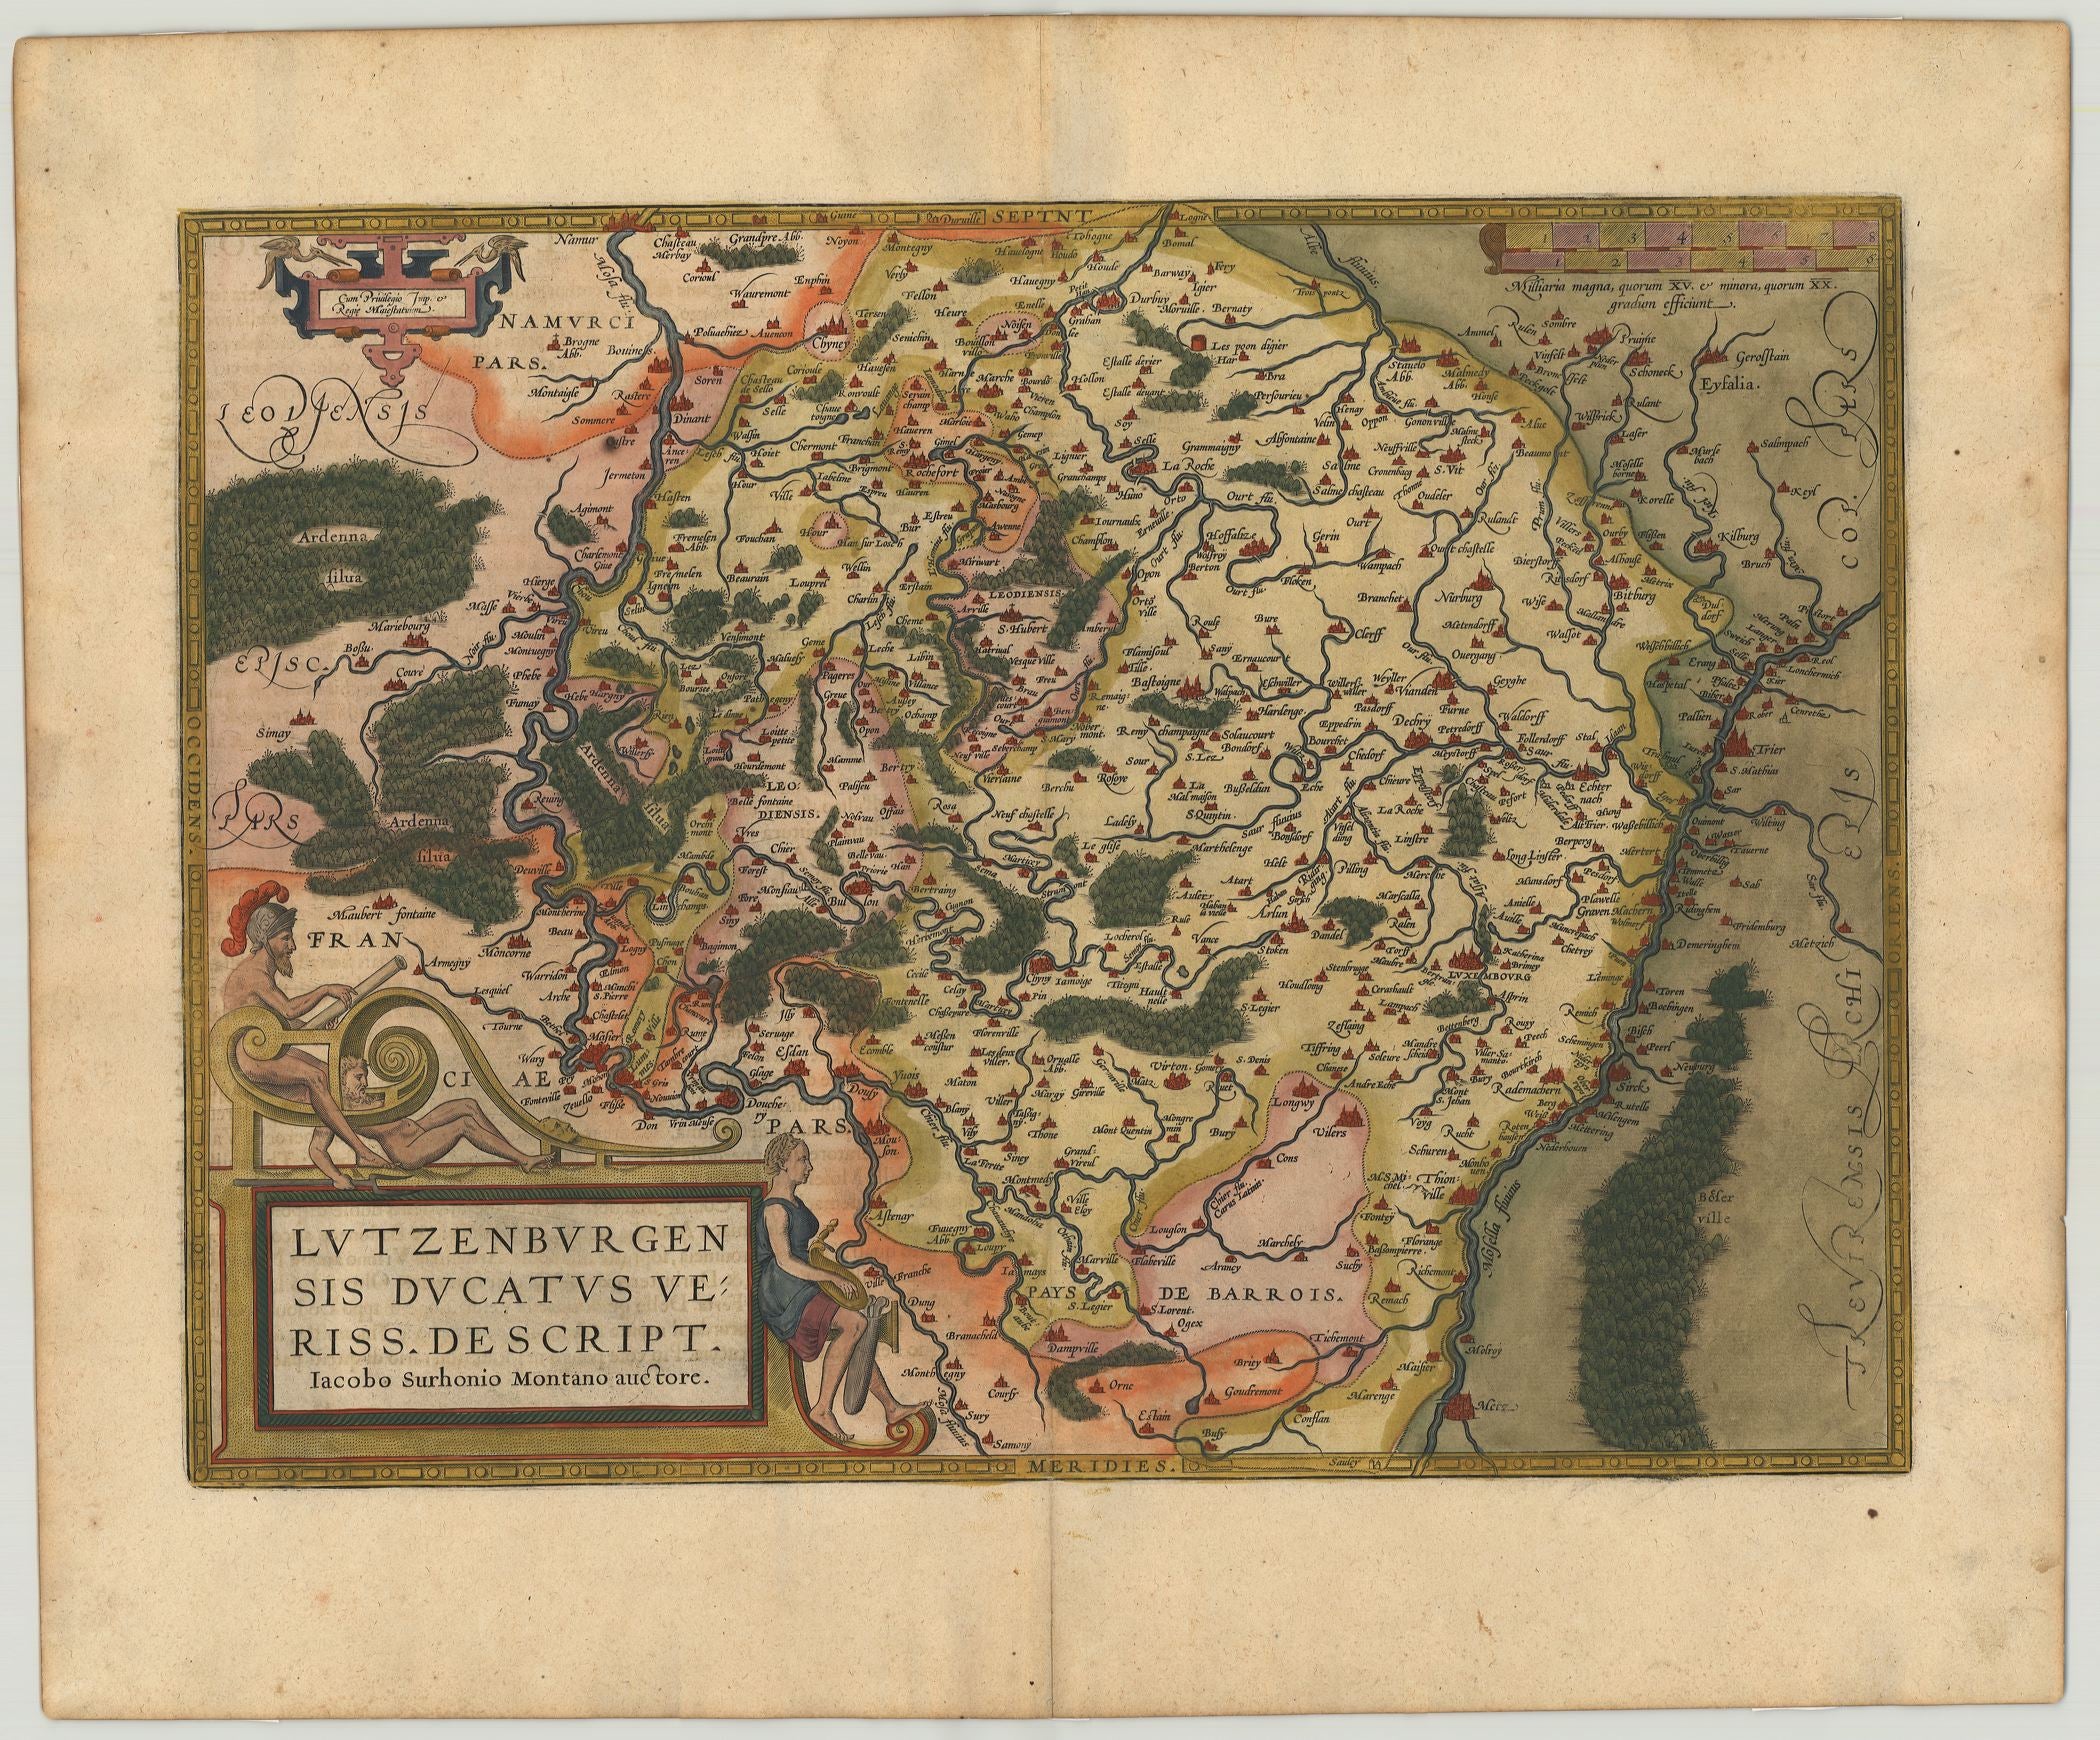 R3409  Ortelius, Abraham: Lutzenburgensis Ducatus Veriss. Escript. 1612